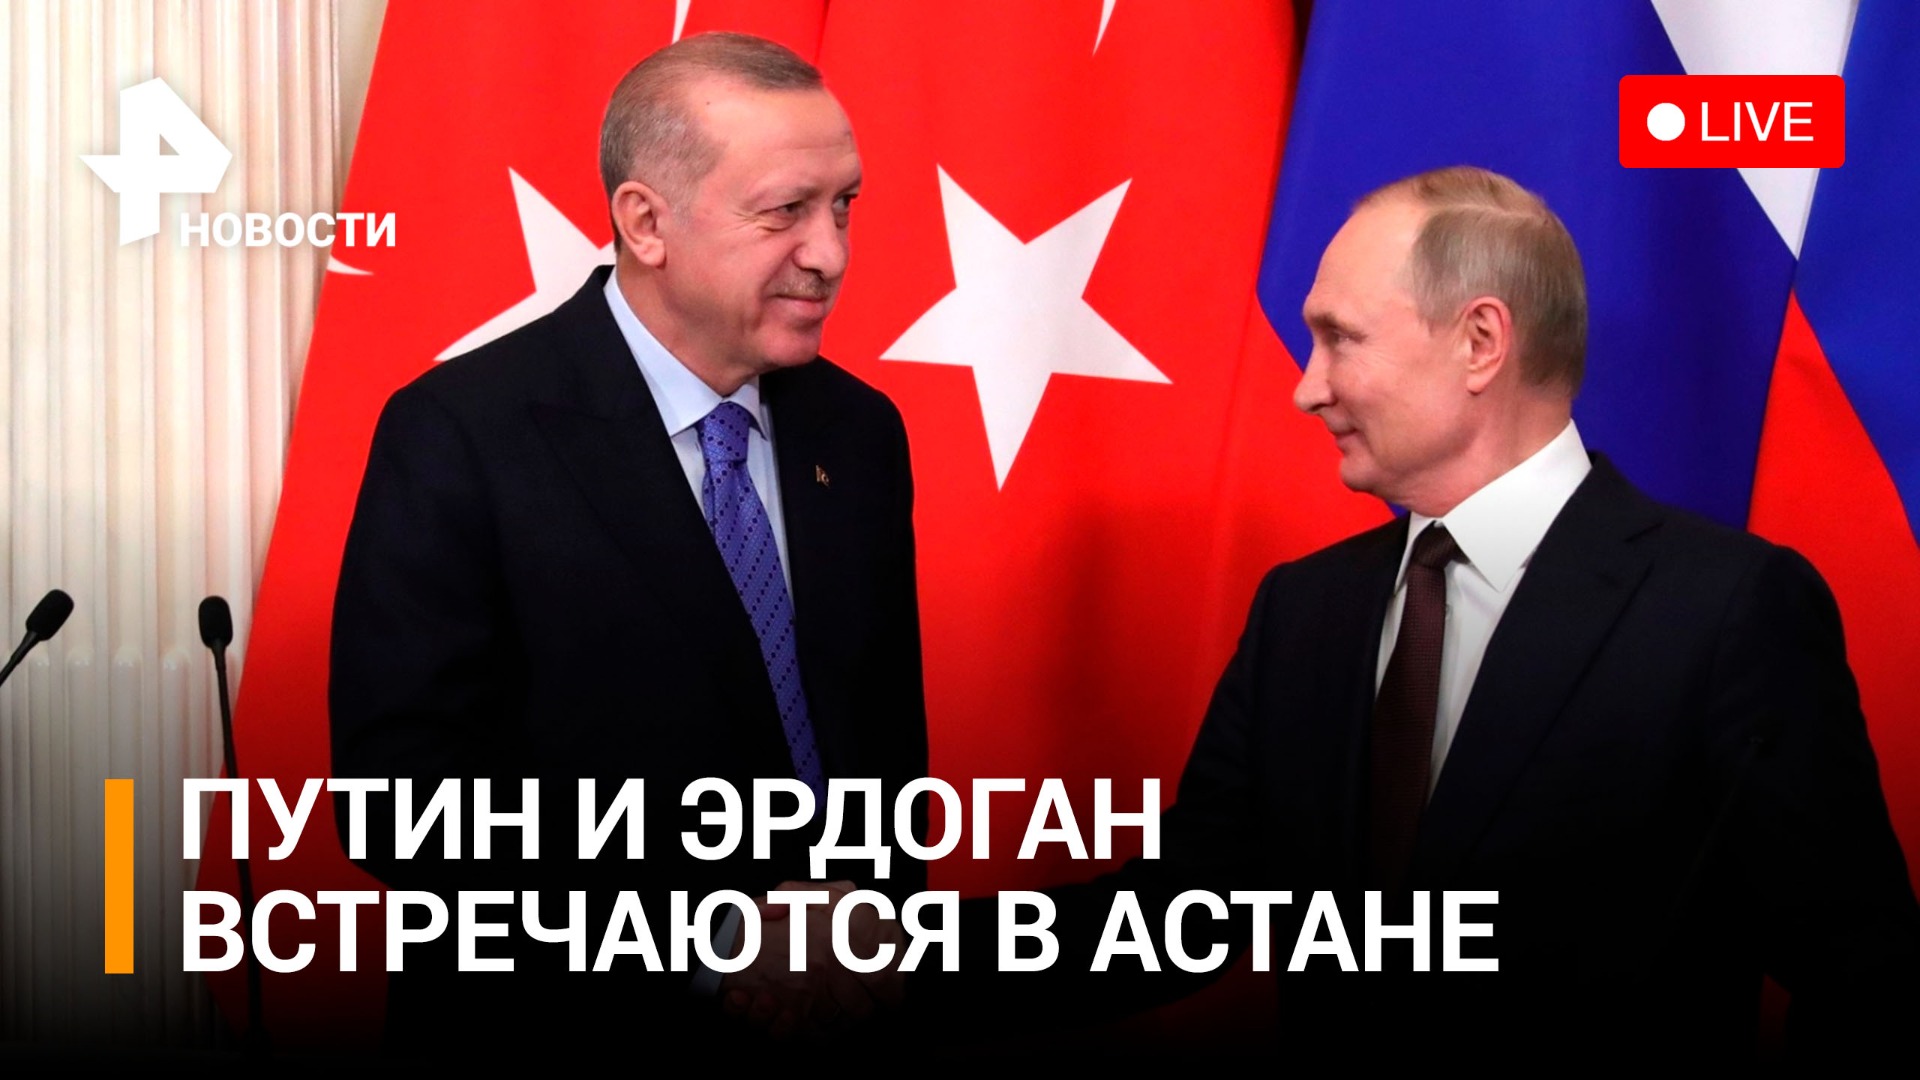 Путин и Эрдоган встречаются на полях саммита СВМДА в Астане / РЕН Новости